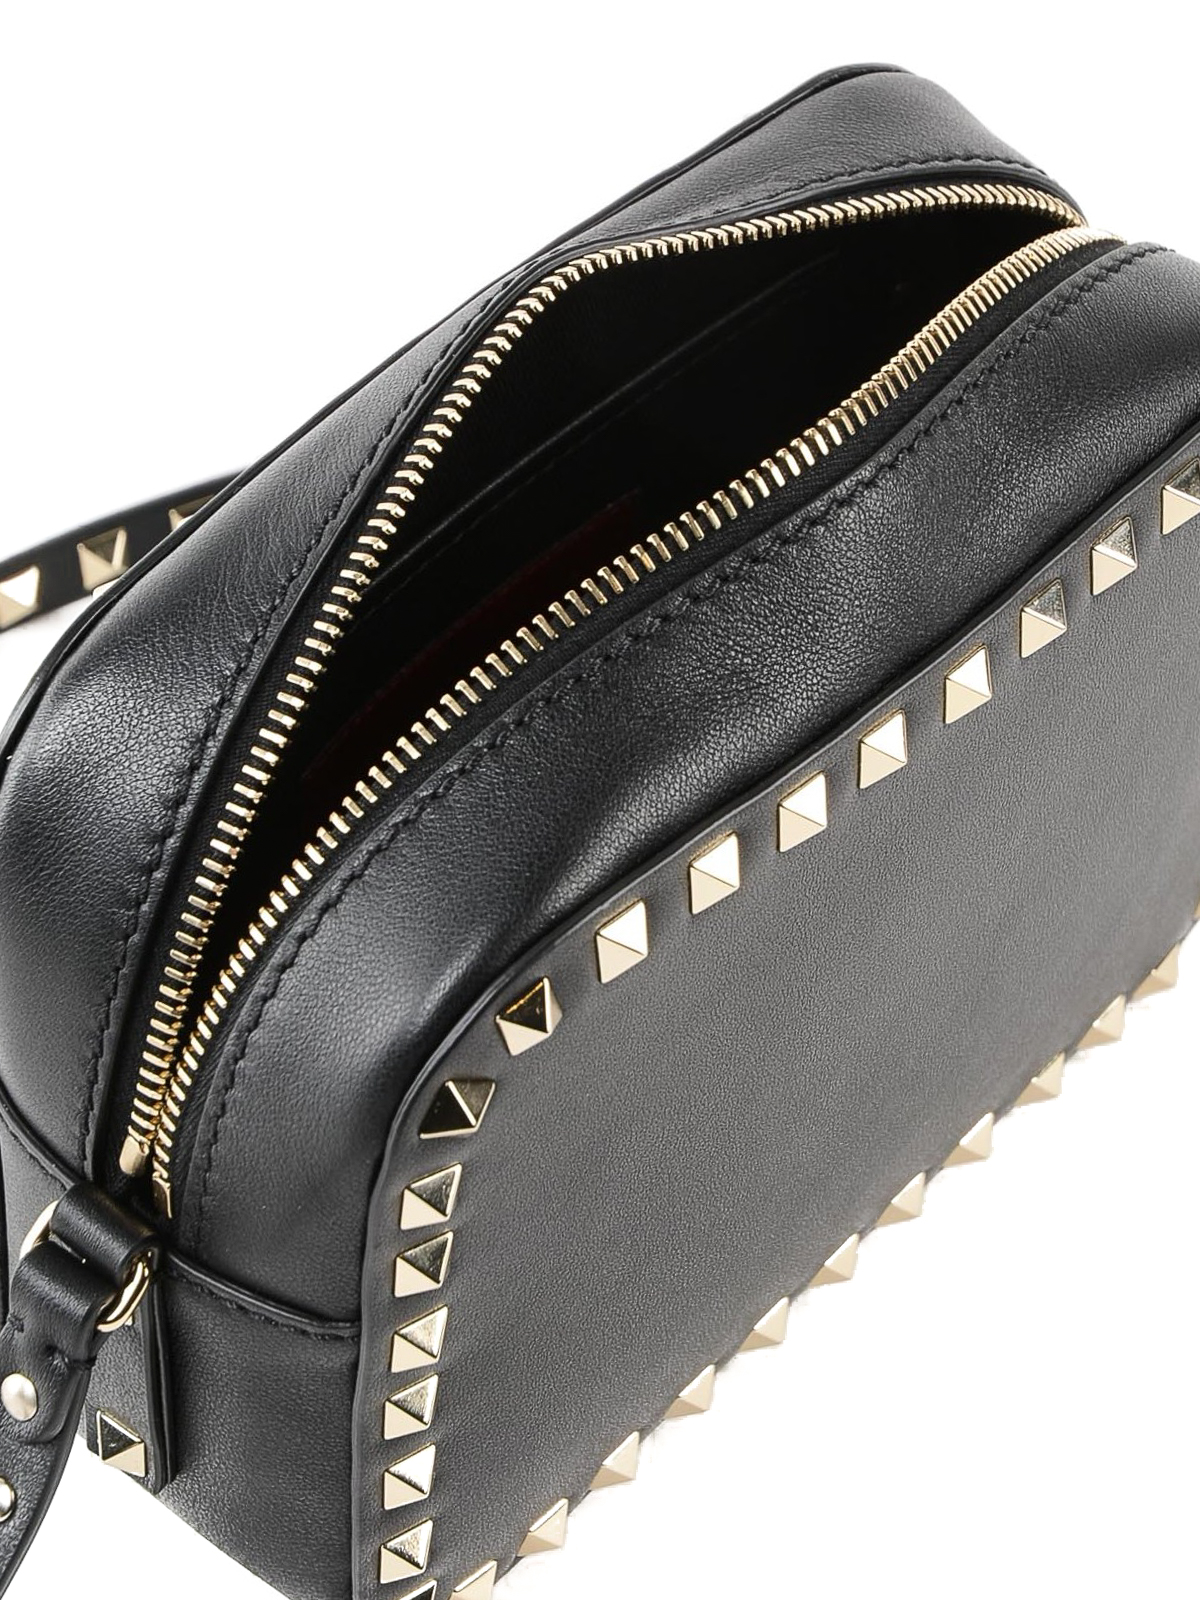 Valentino Garavani - Rockstud Black Smooth Leather Backpack